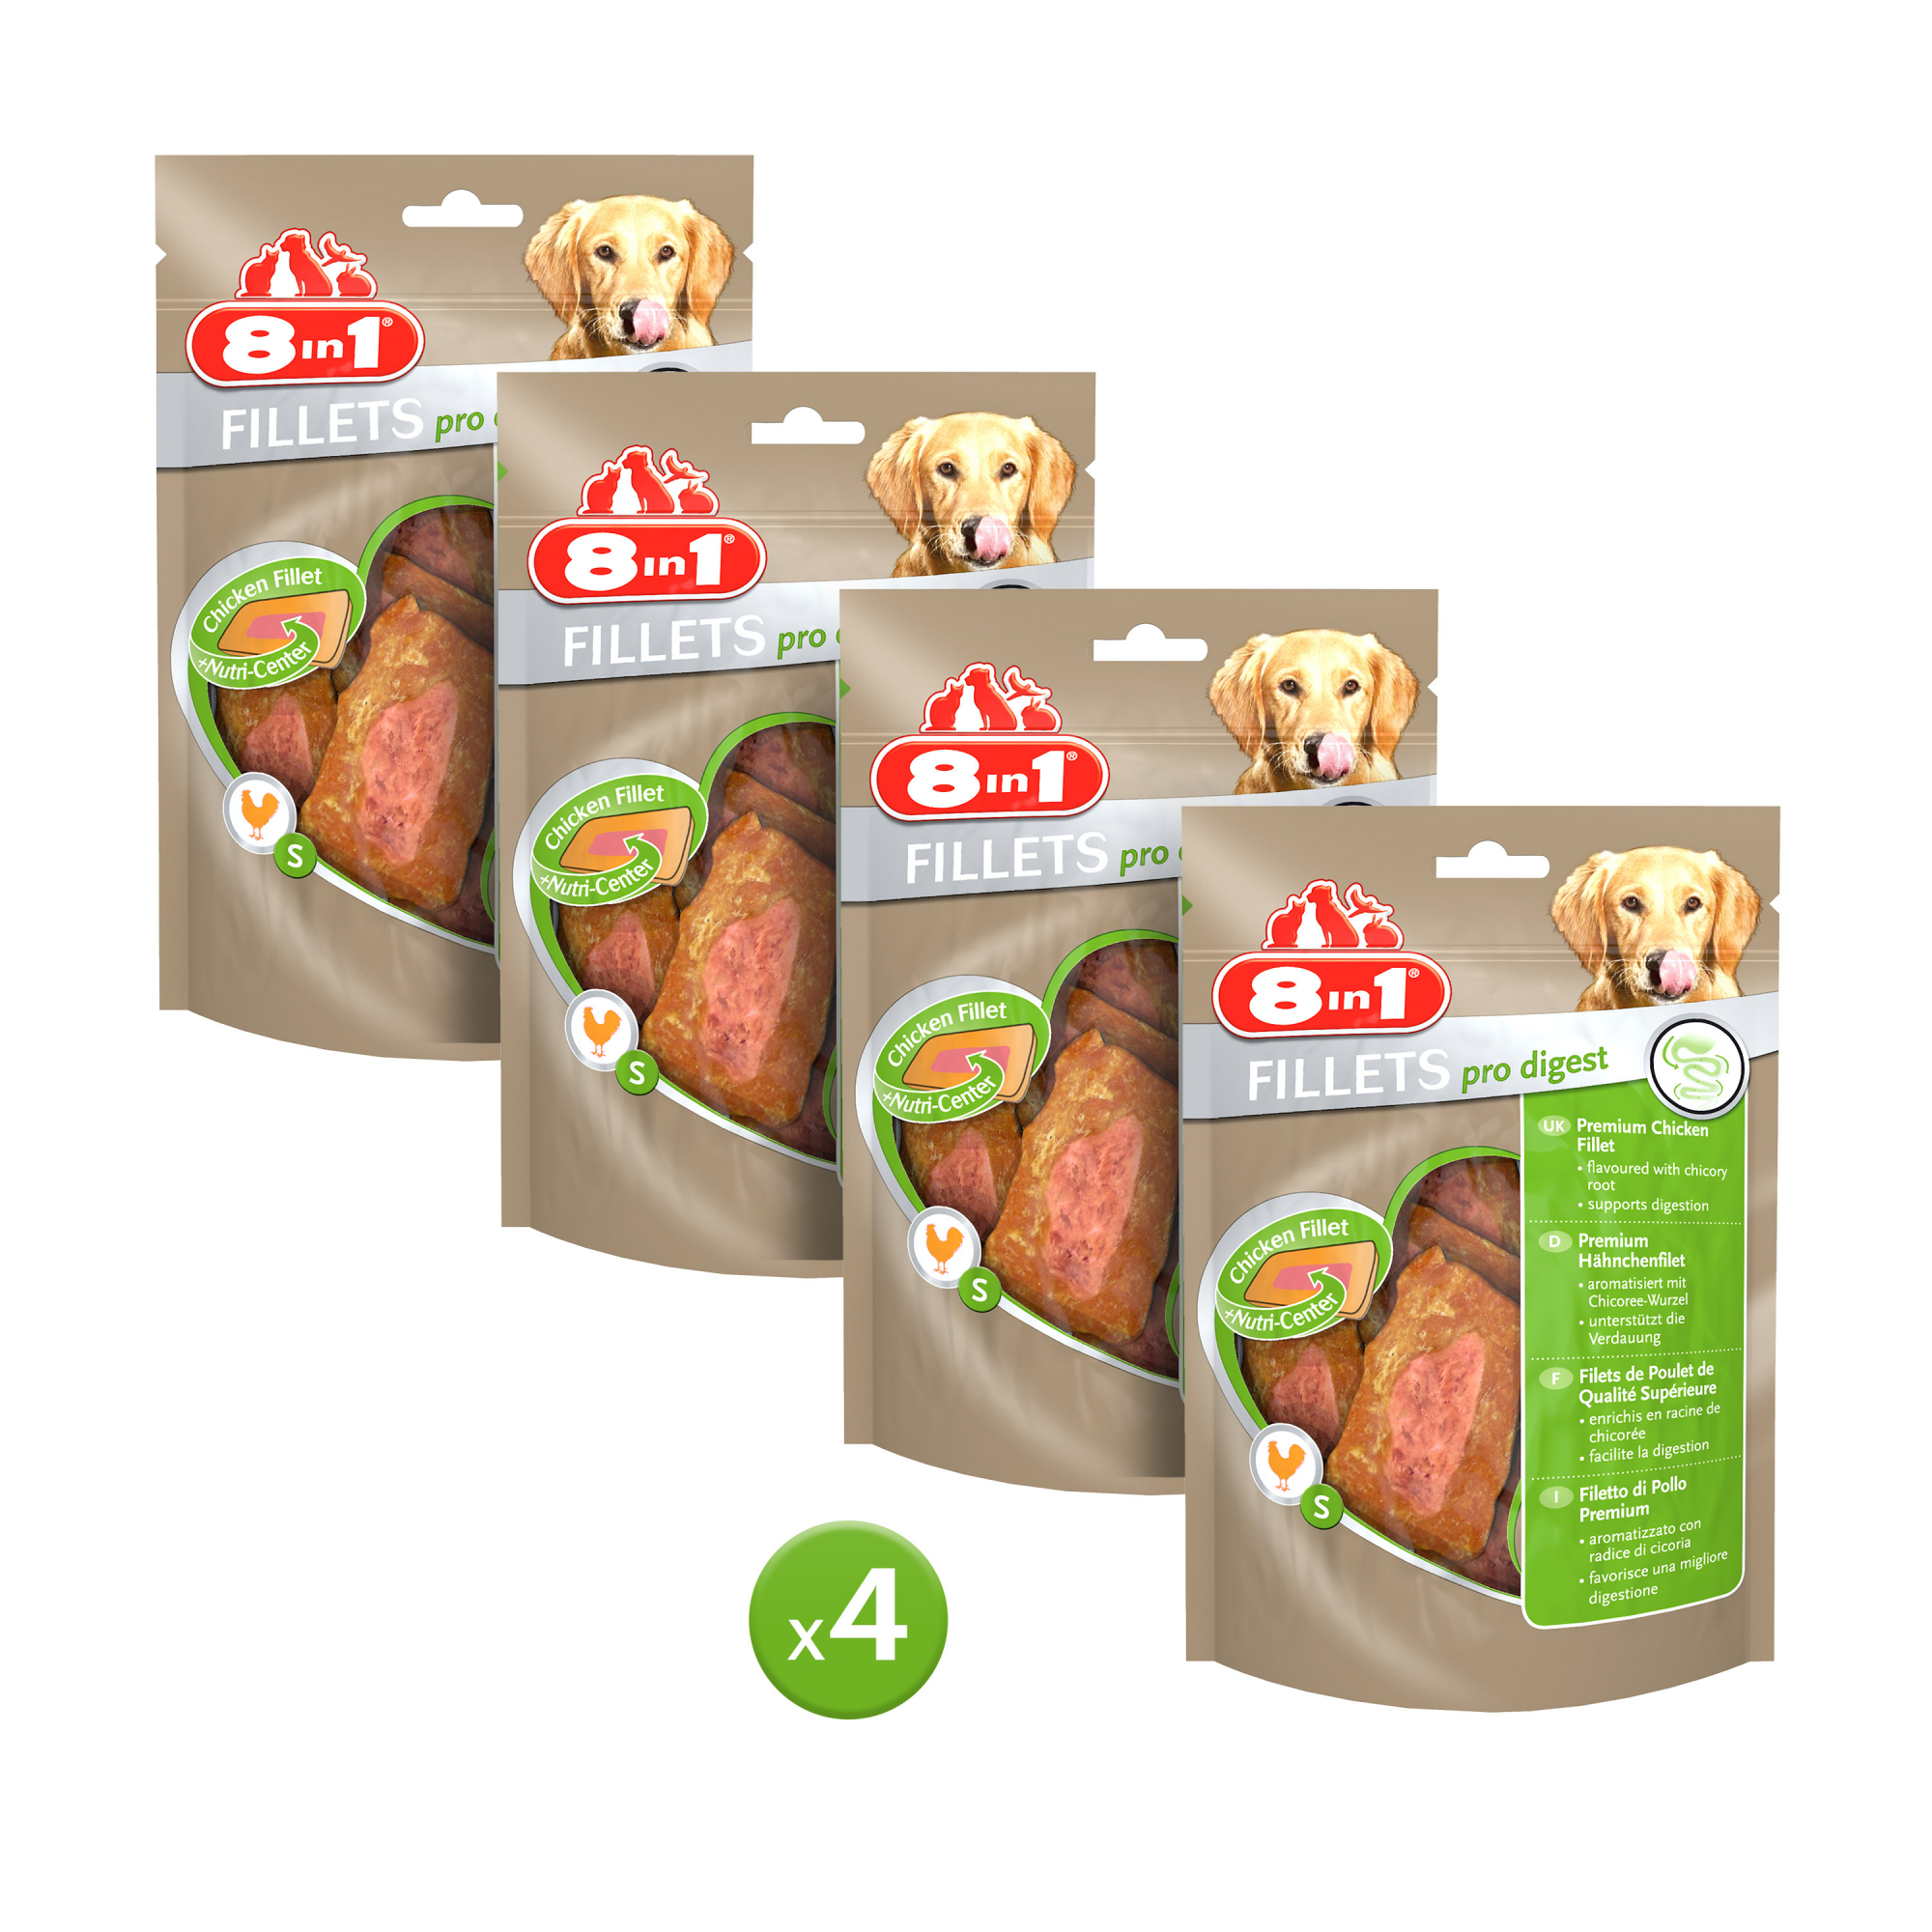 Golosinas que ayudan a la digestión, sabor pollo - 8in1 Fillets Pro Digest